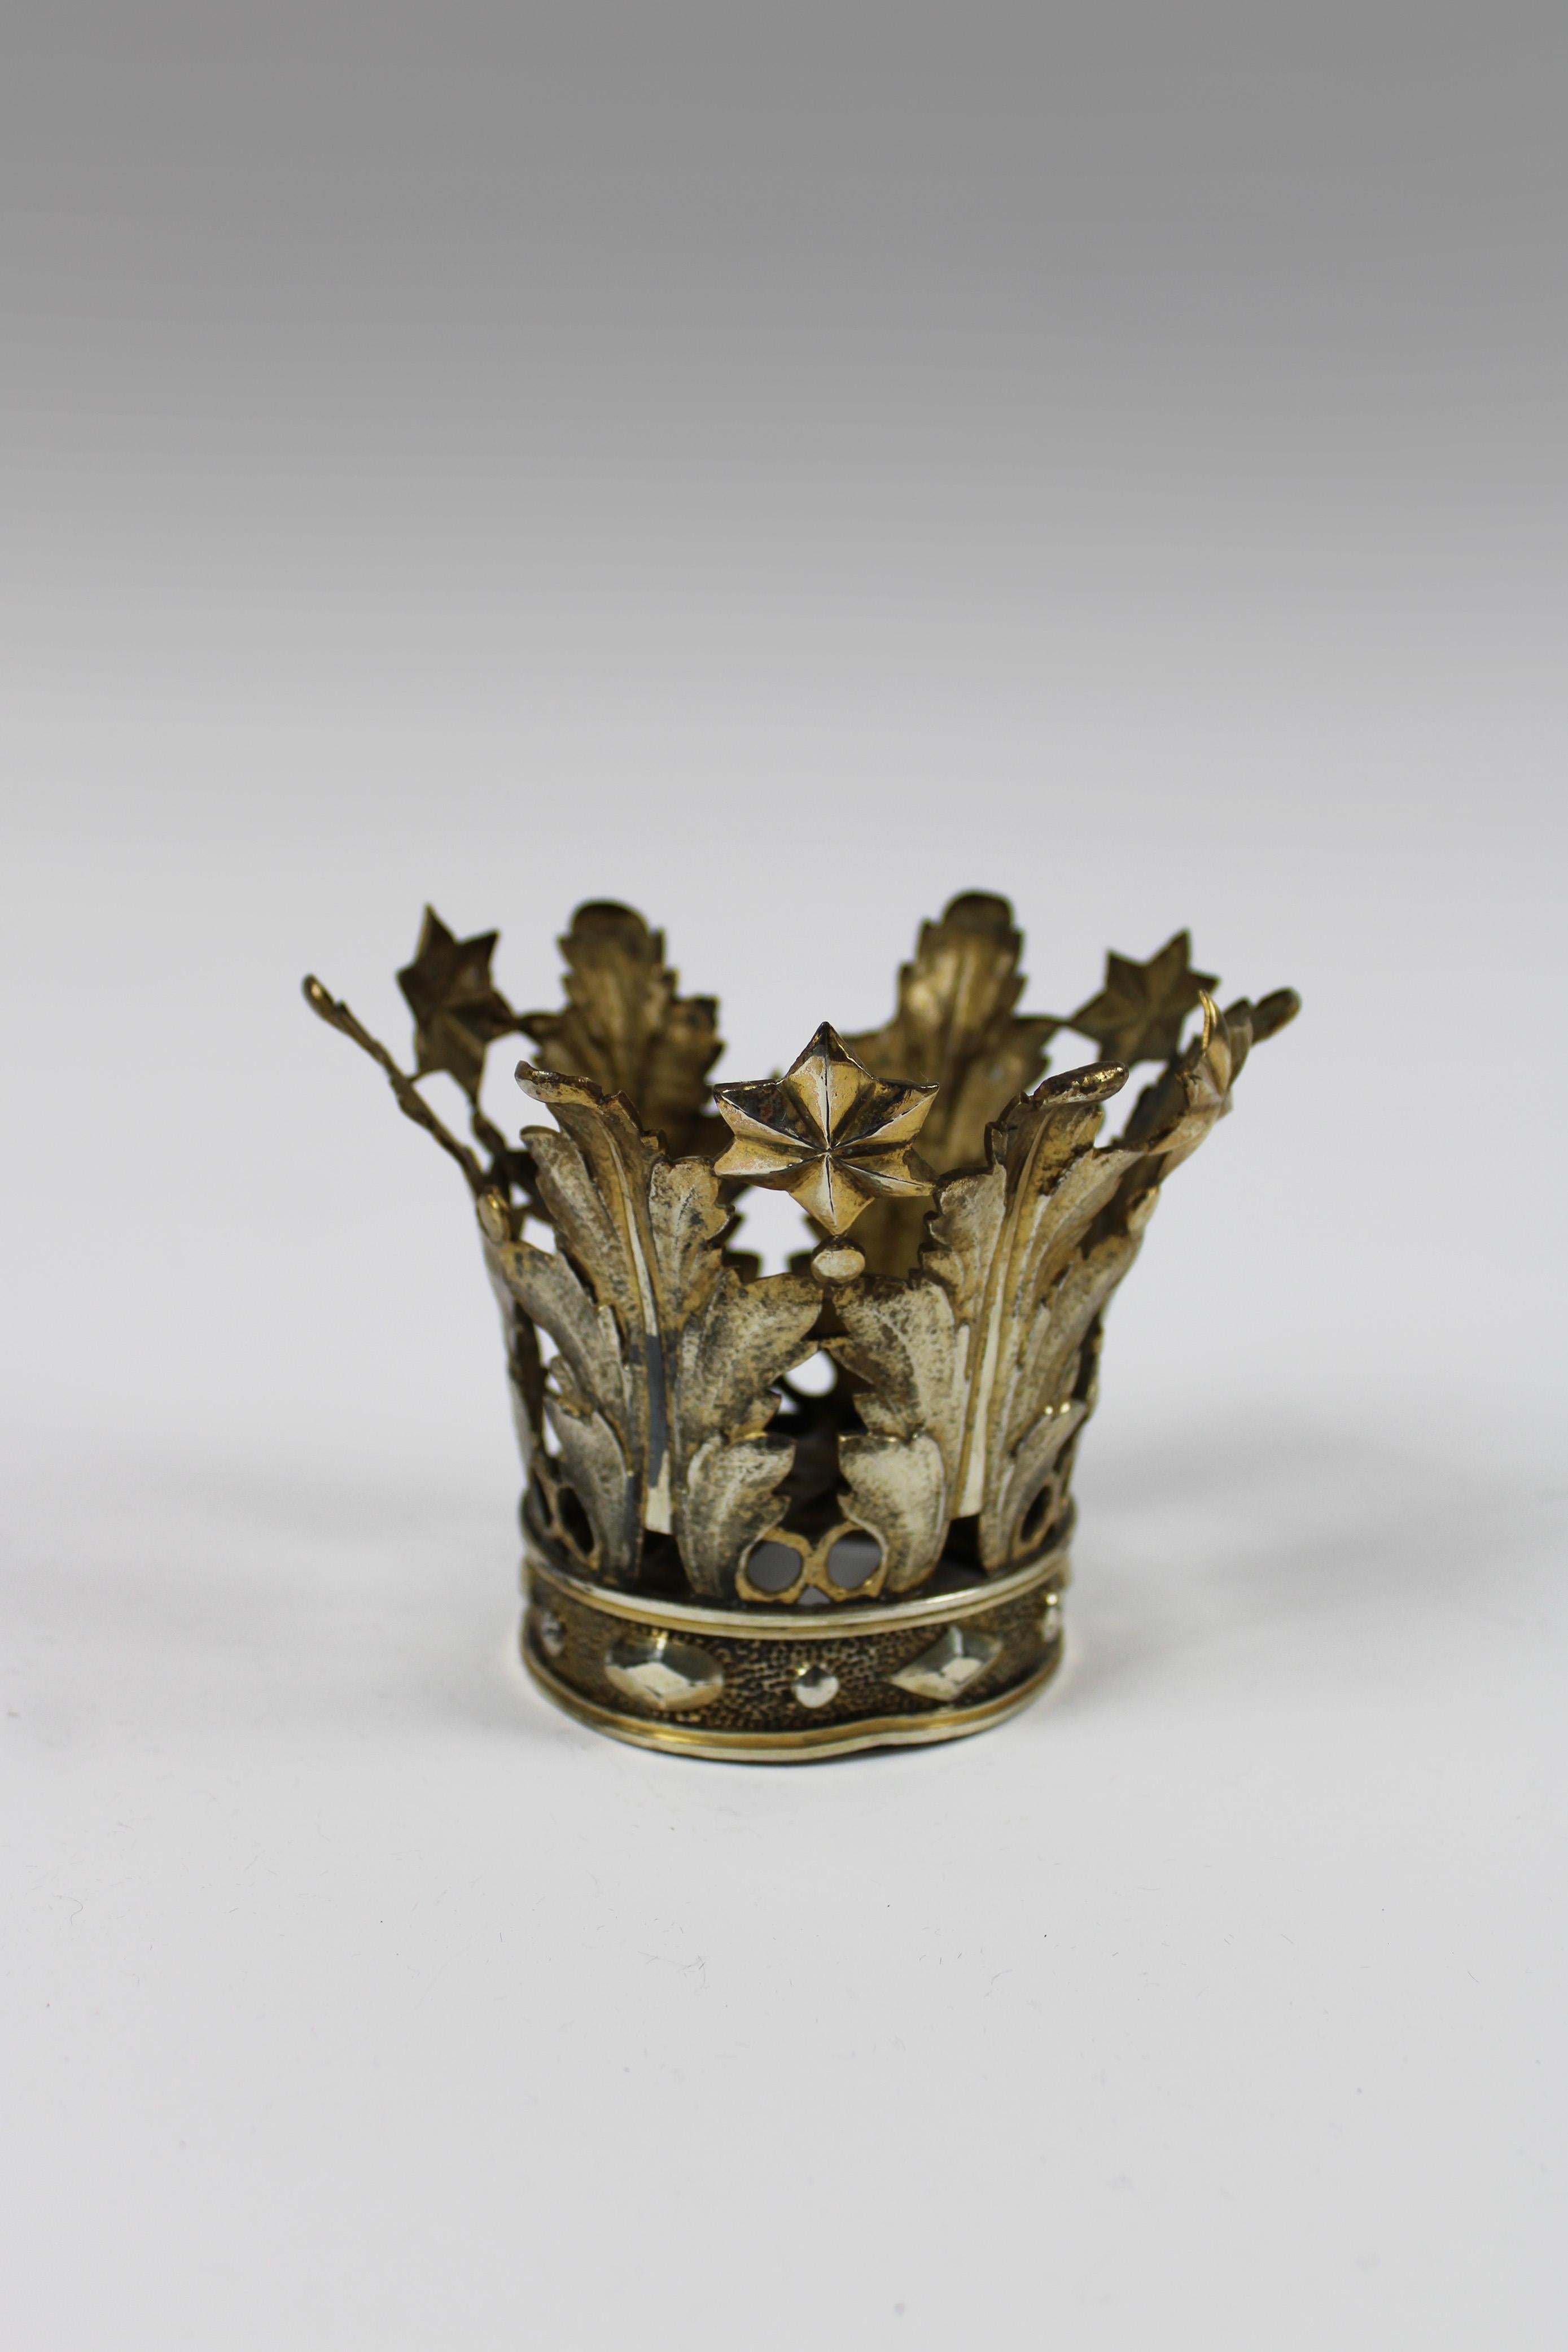 Dieses exquisite religiöse Artefakt aus luxuriösem Vermeille-Silber stammt aus Flandern, wo es einst die heilige Marienstatue schmückte. Die mit verschlungenen Akanthusblättern und Sternen geschmückte Krone strahlt eine himmlische Aura von Eleganz